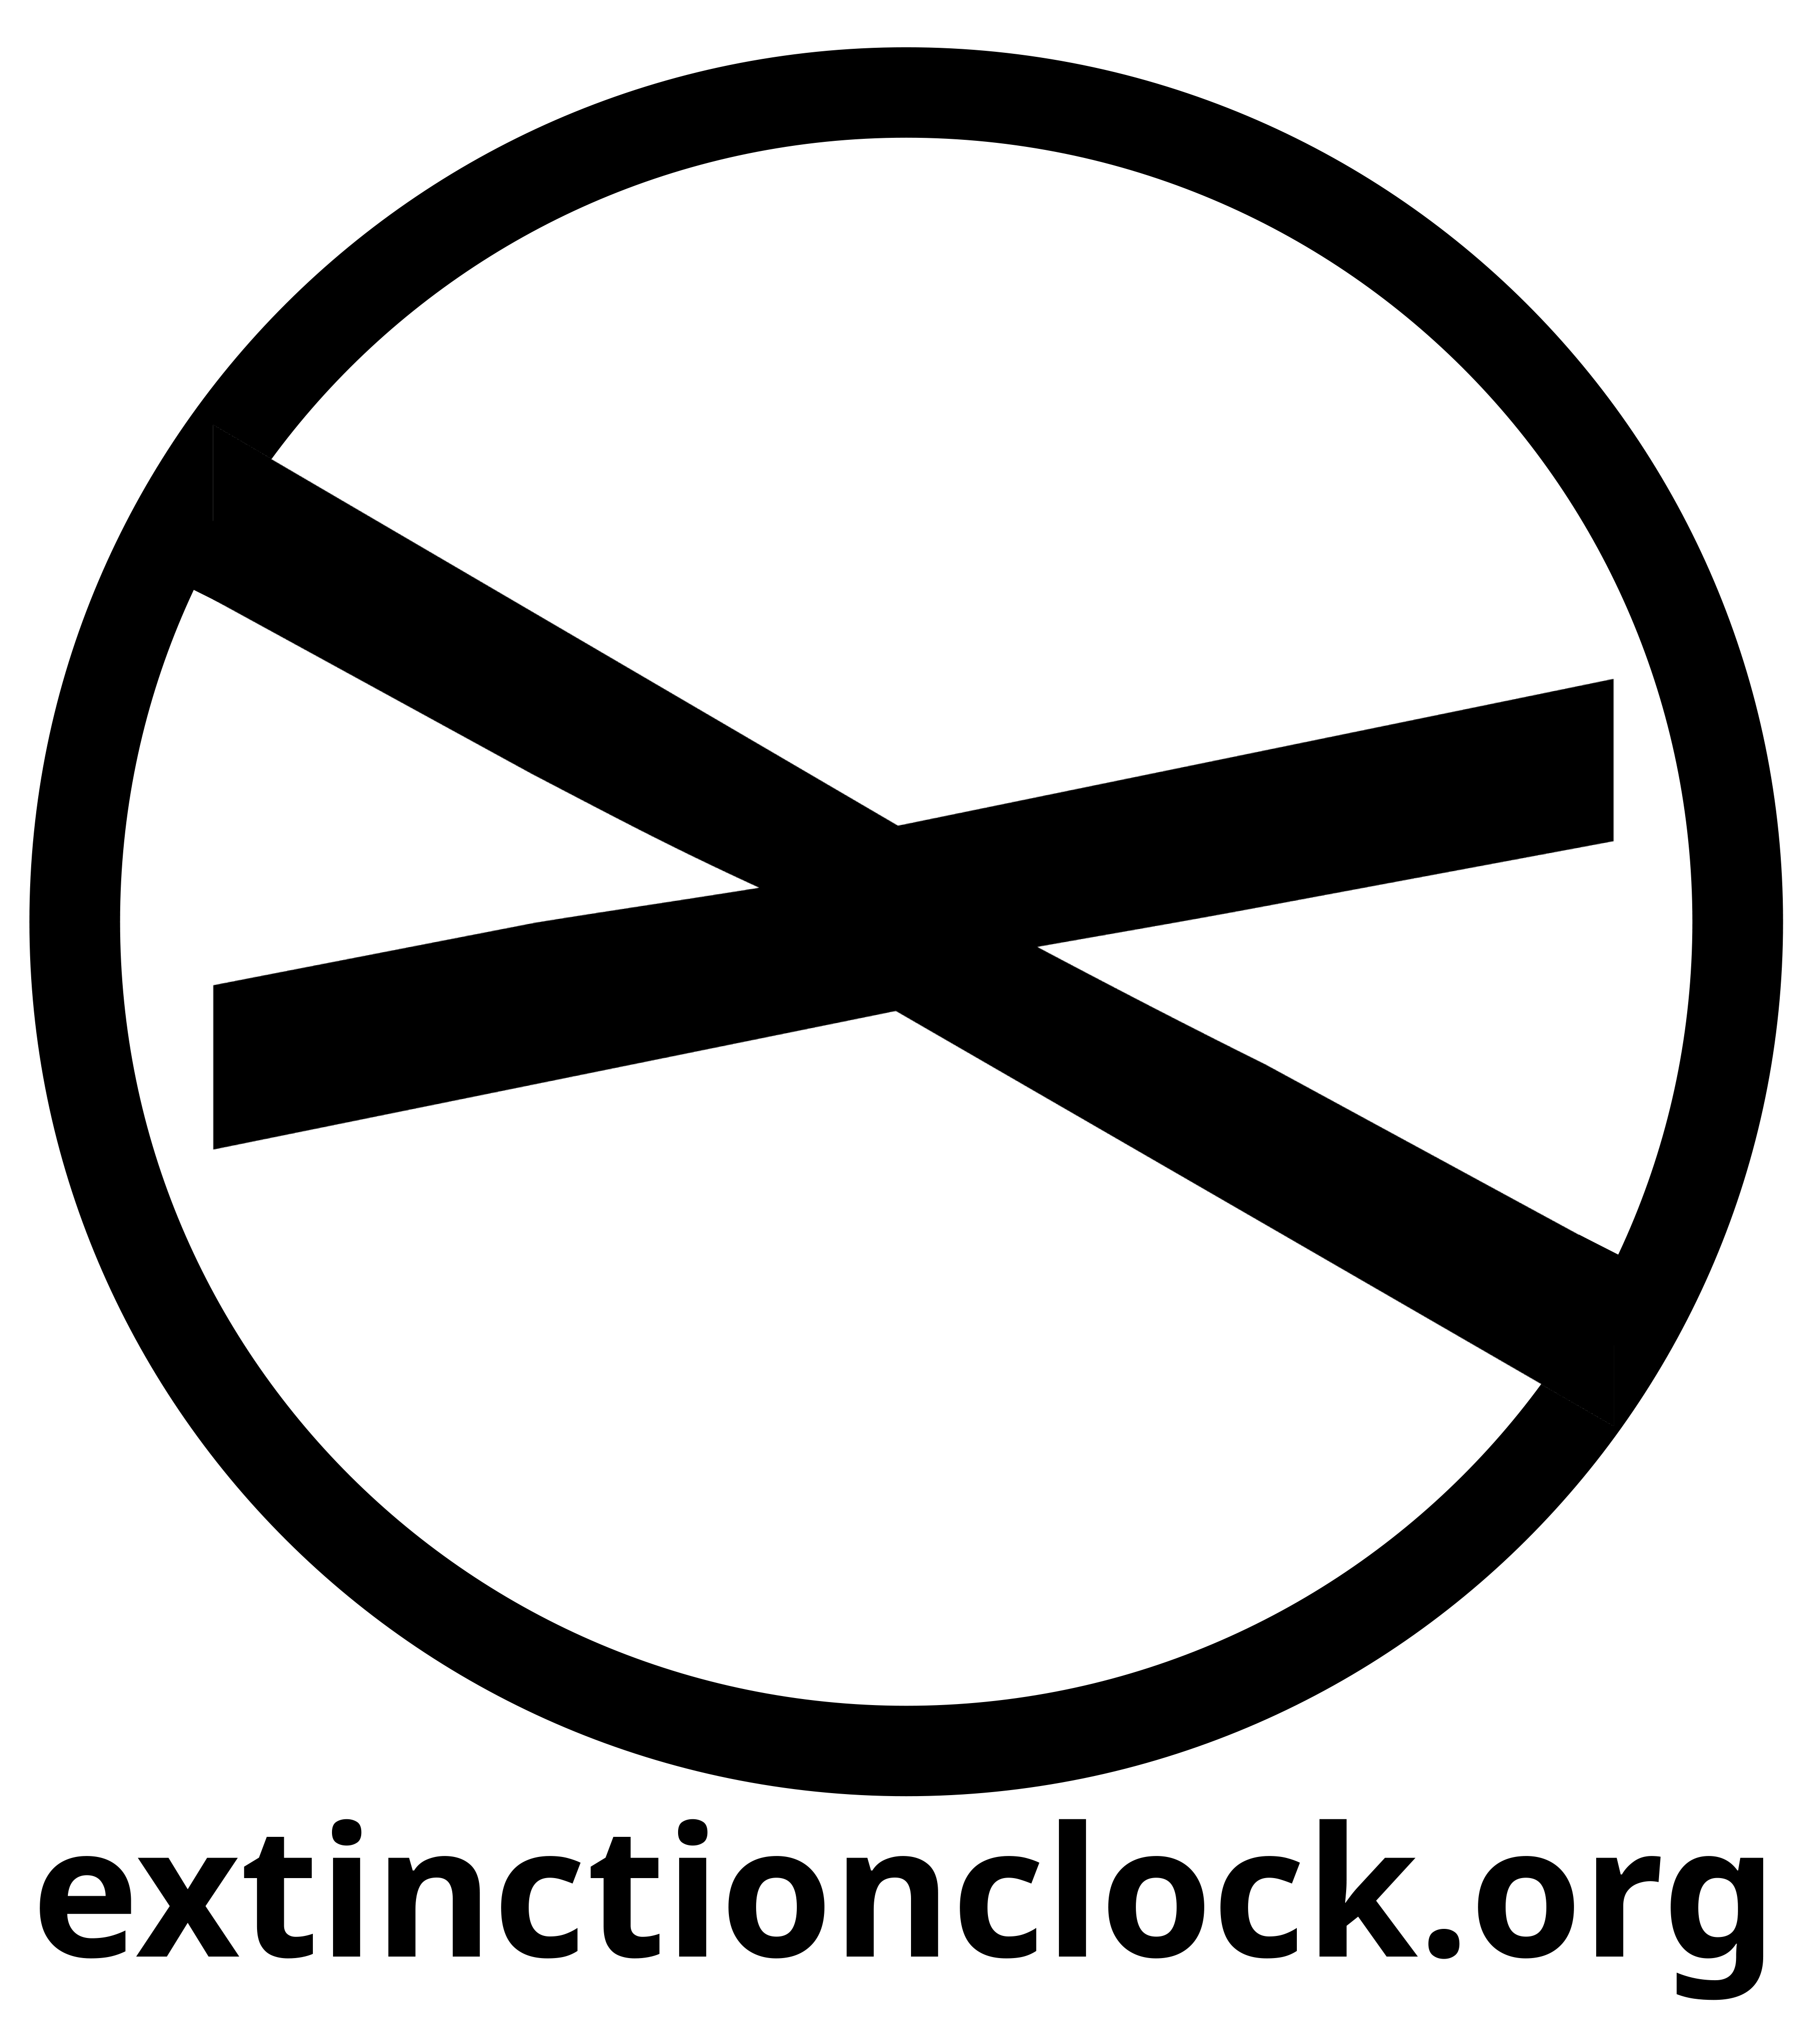 extinctionclock.org